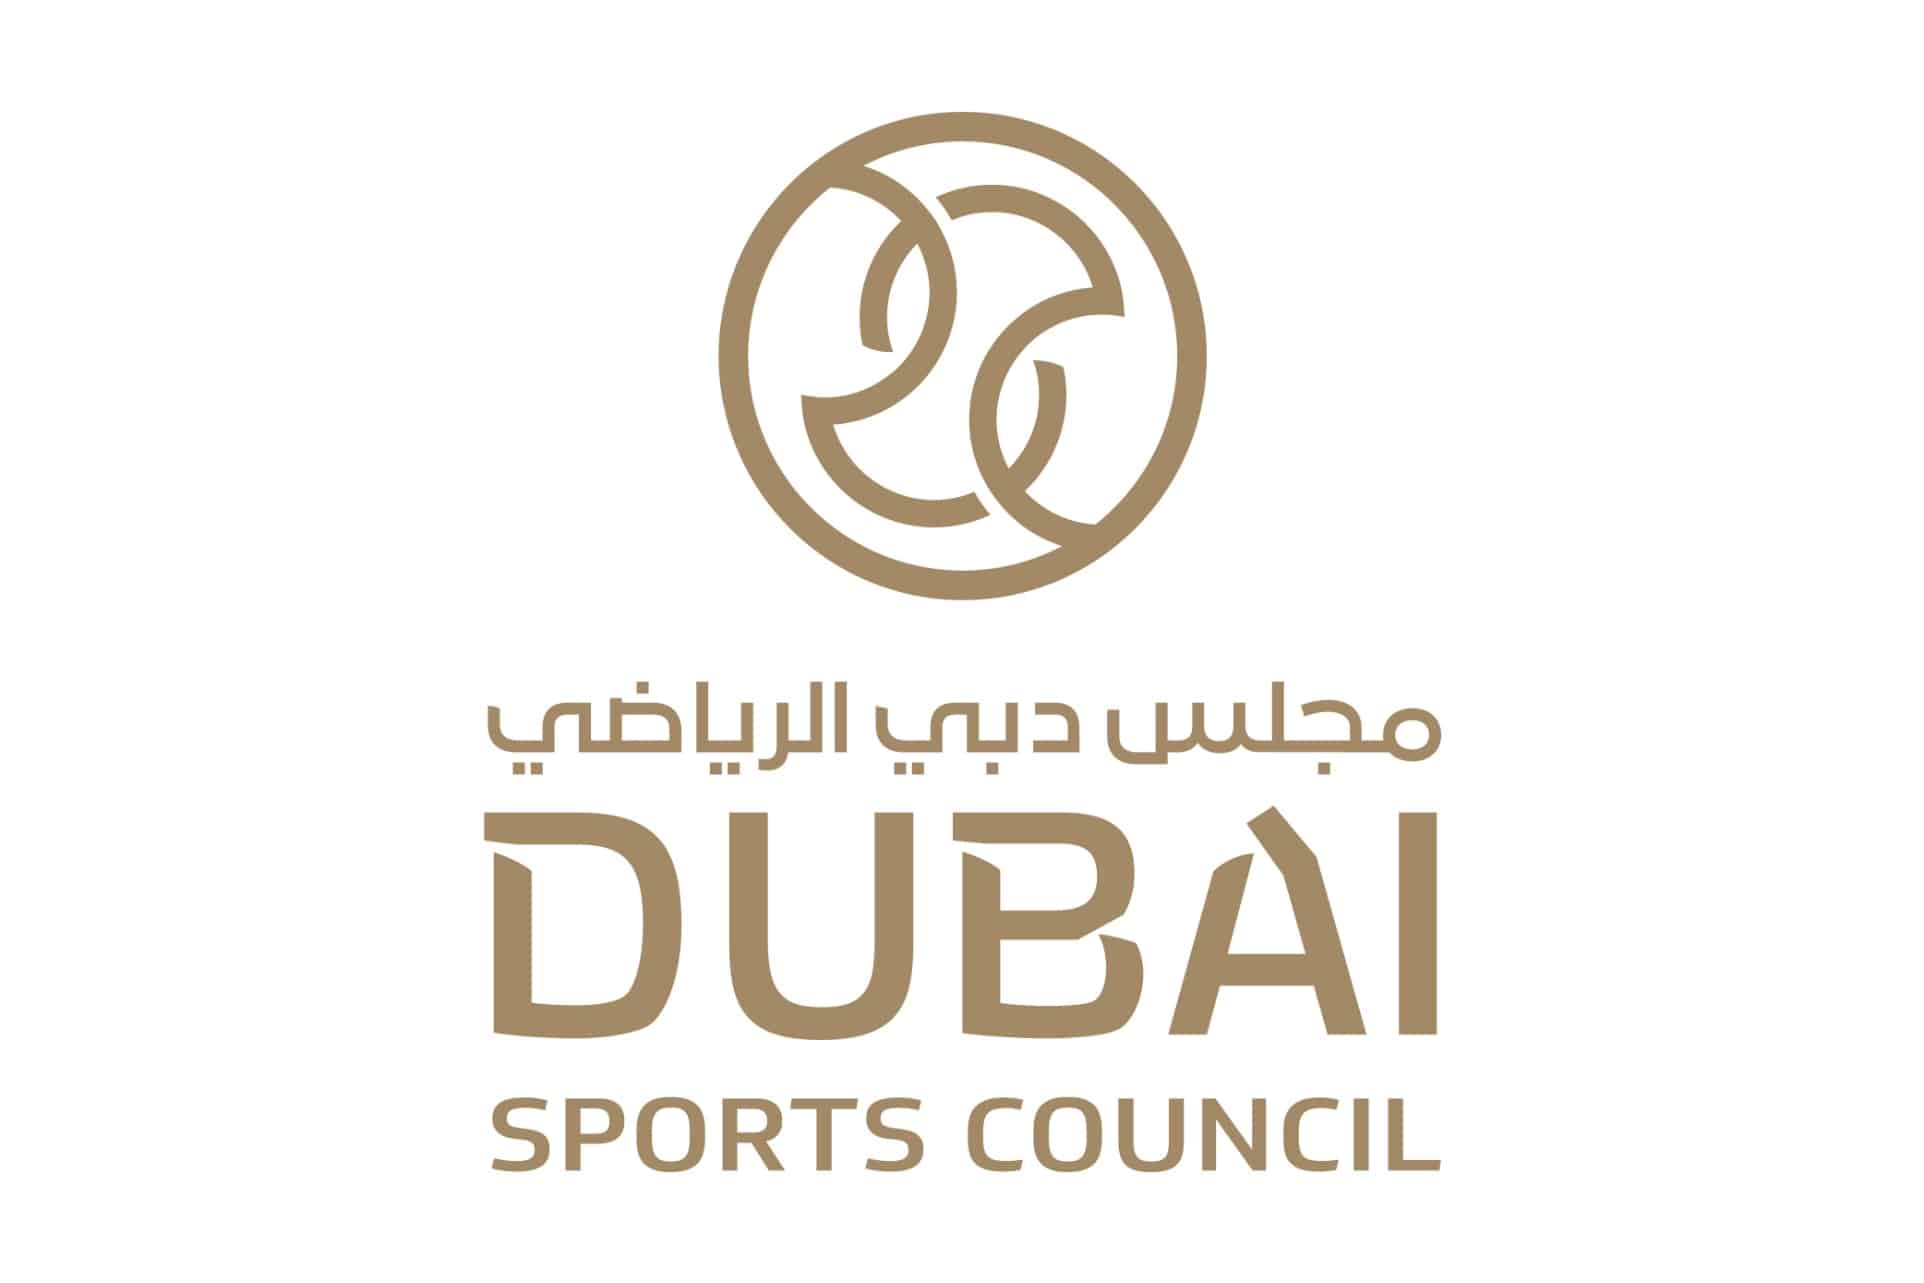   مجلس دبي الرياضي يعتمد خطة نادي النصر 